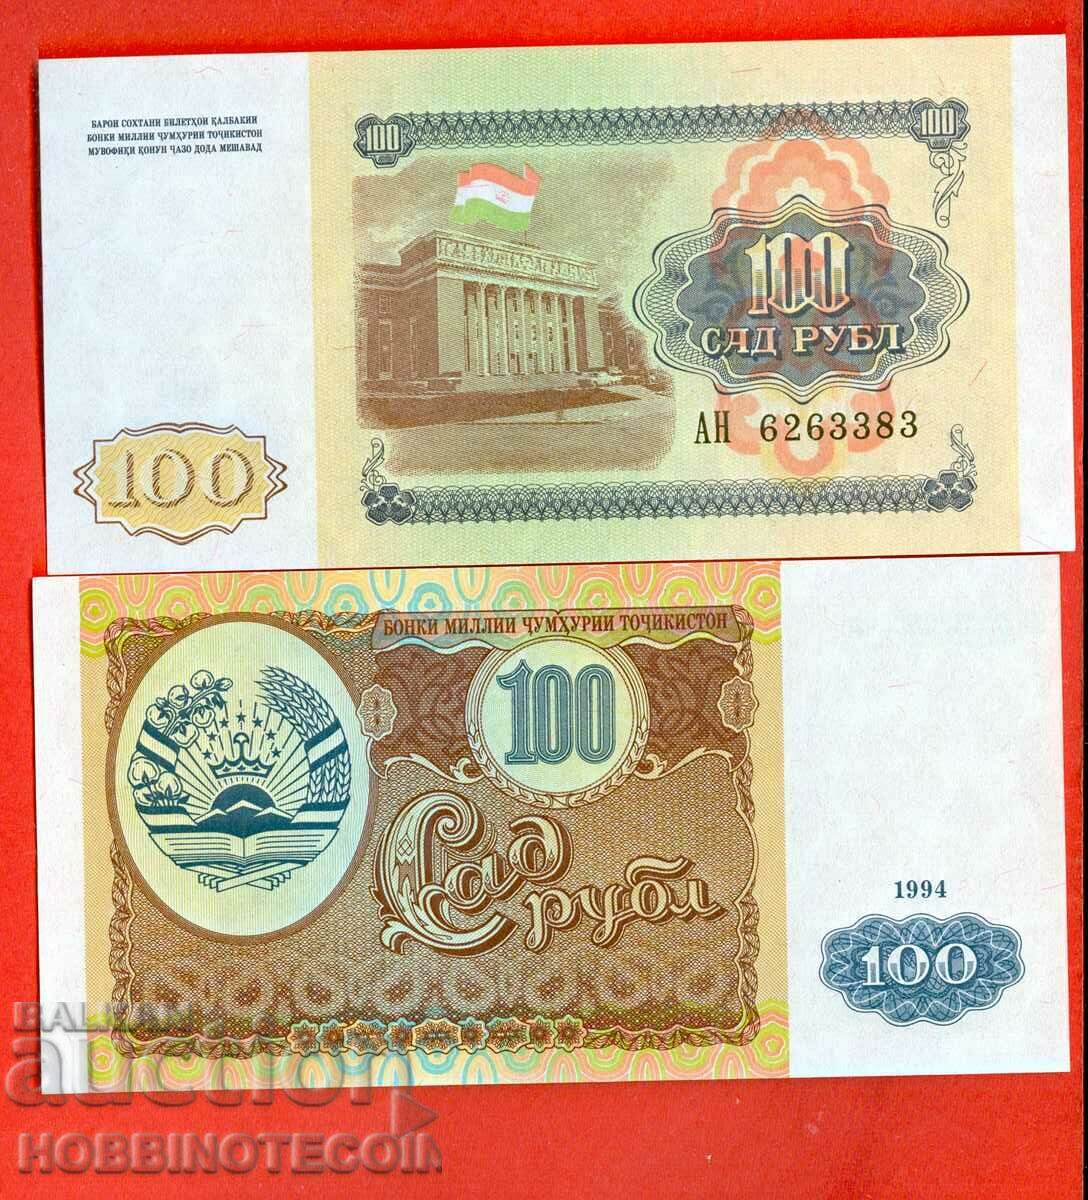 TAJIKISTAN TAJIKISTAN 100 Rubles issue issue 1994 NEW UNC